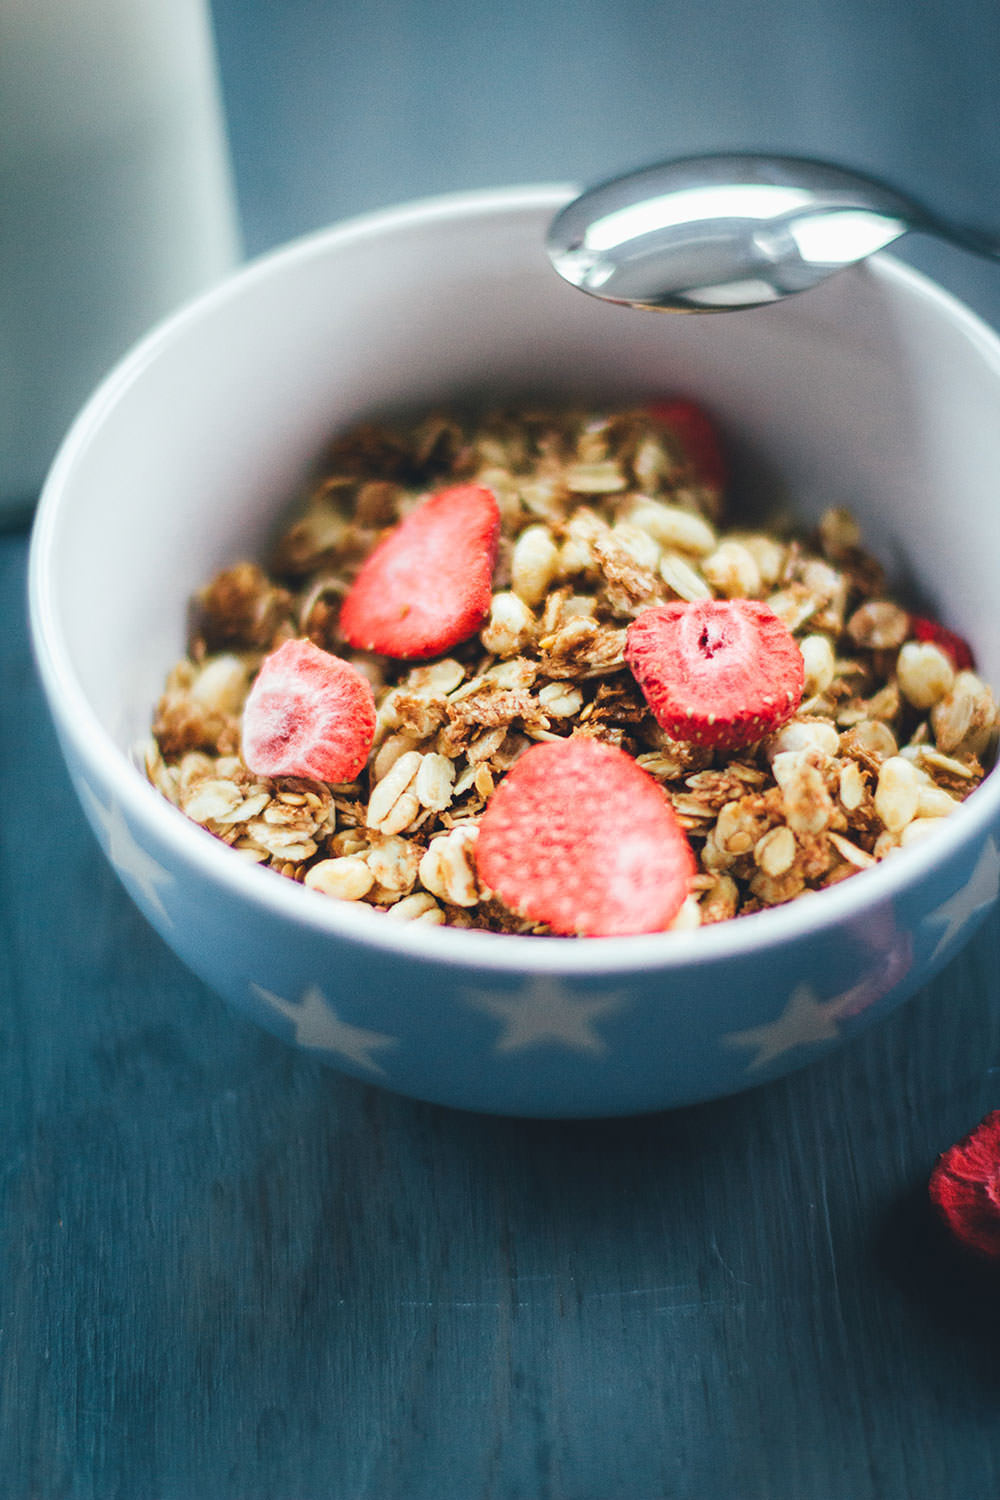 Rezept für Erdbeer-Crispie-Granola | Mein Müsli der Woche | leckeres Knuspermüsli mit gepufftem Dinkel und getrockneten Erdbeerstückchen | moeyskitchen.com #granola #knuspermüsli #muesli #selbstgemacht #homemade #foodblogger #rezepte #frühstück #breakfast #erdbeeren #strawberries #dinkel 